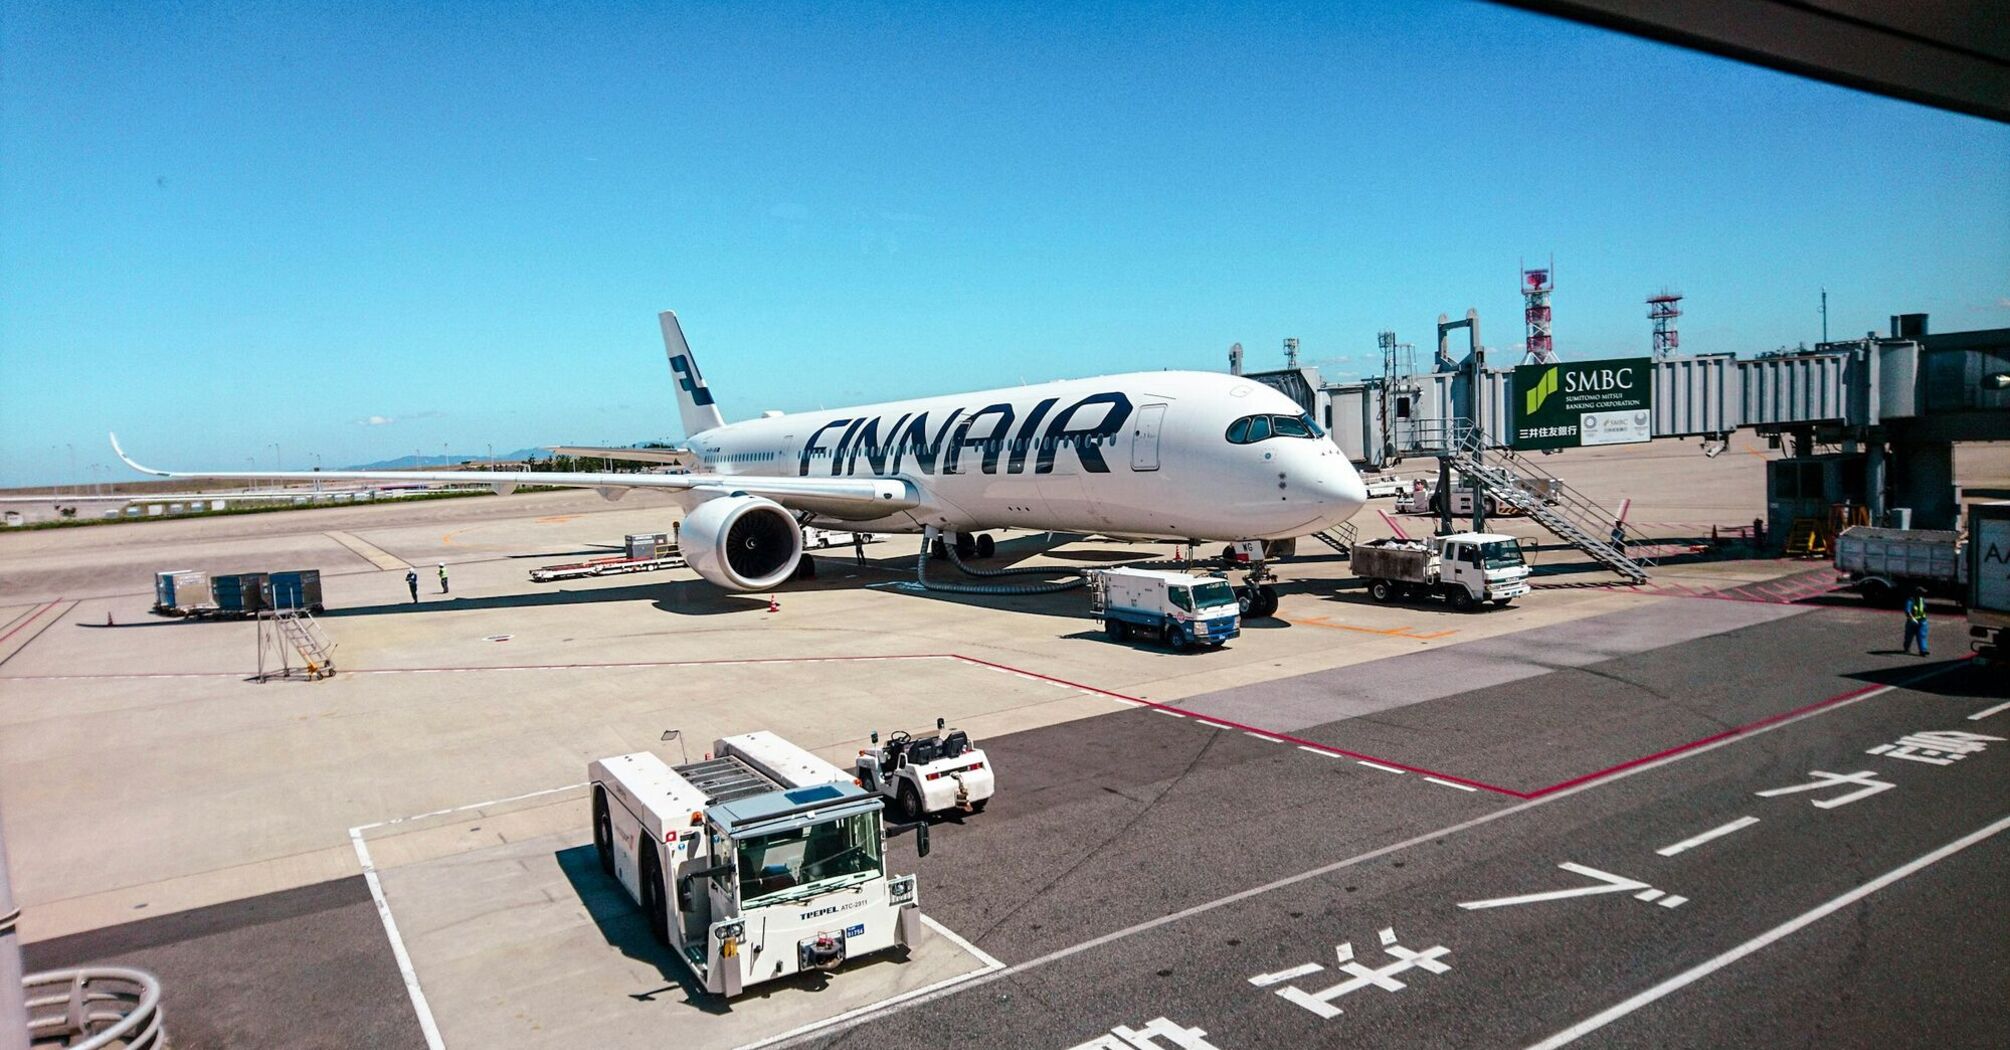 Finnair airplane at the airport gate